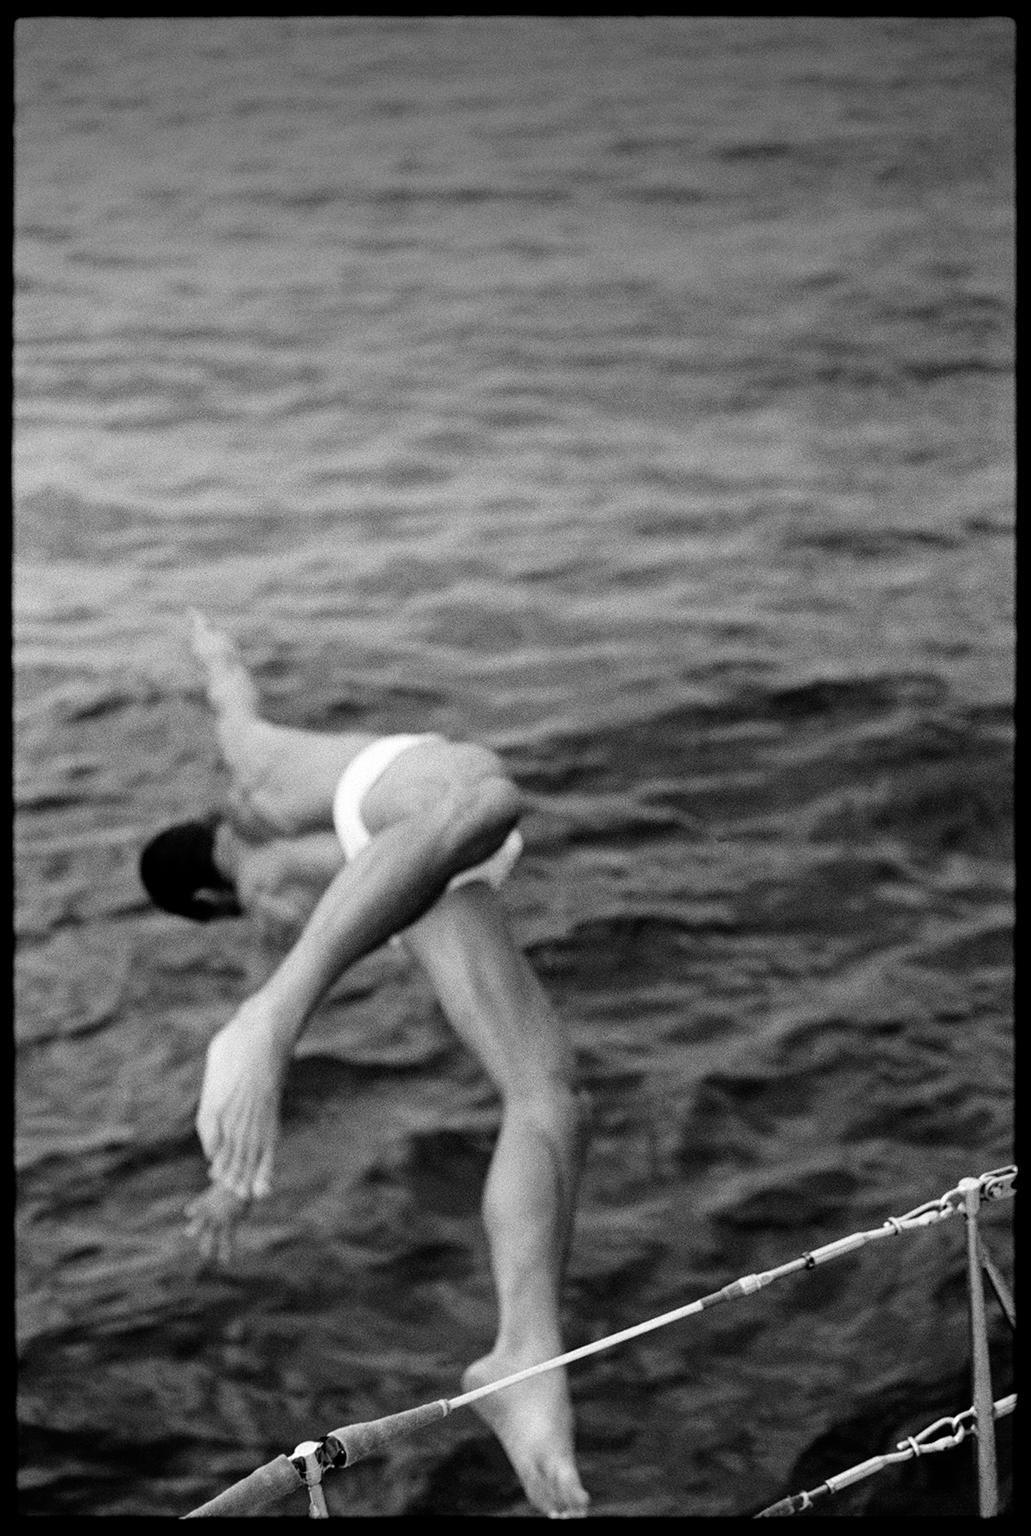 Figurative Photograph Jean-Luc Fievet - 1993-Paulo Italie - Photographie en noir et blanc d'un homme plongant dans un bateau à voile